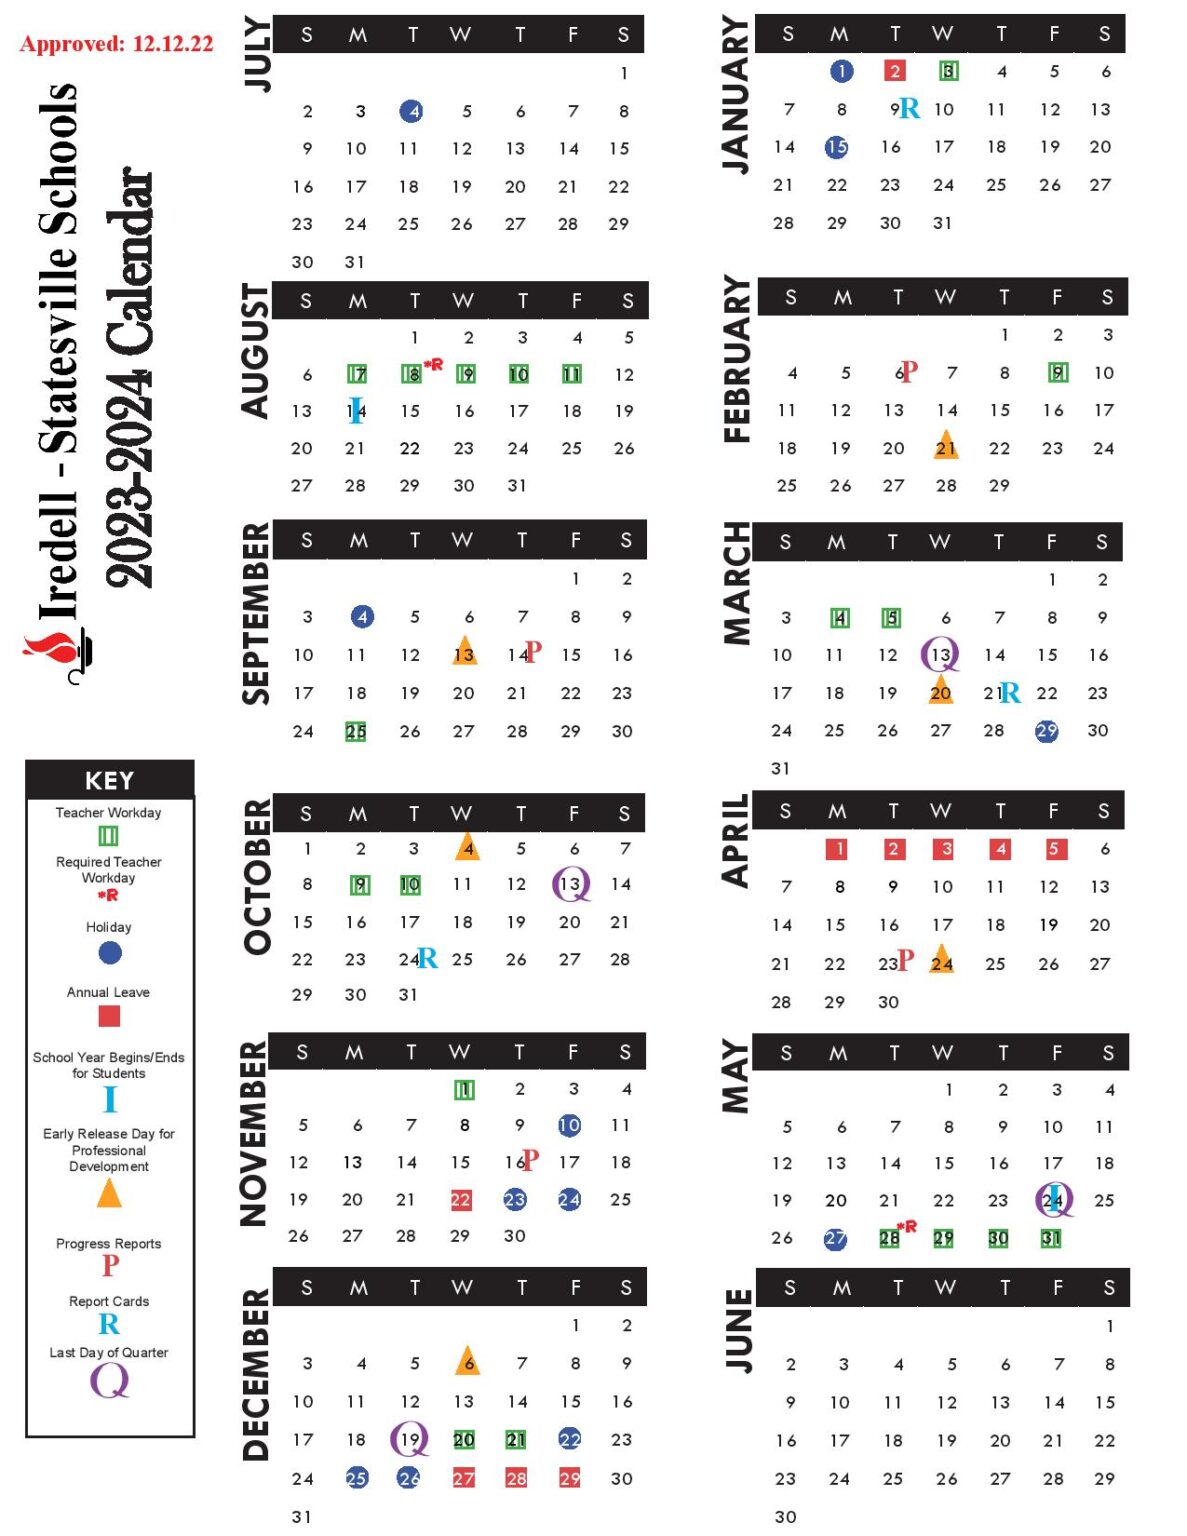 IredellStatesville Schools Calendar 20232024 in PDF